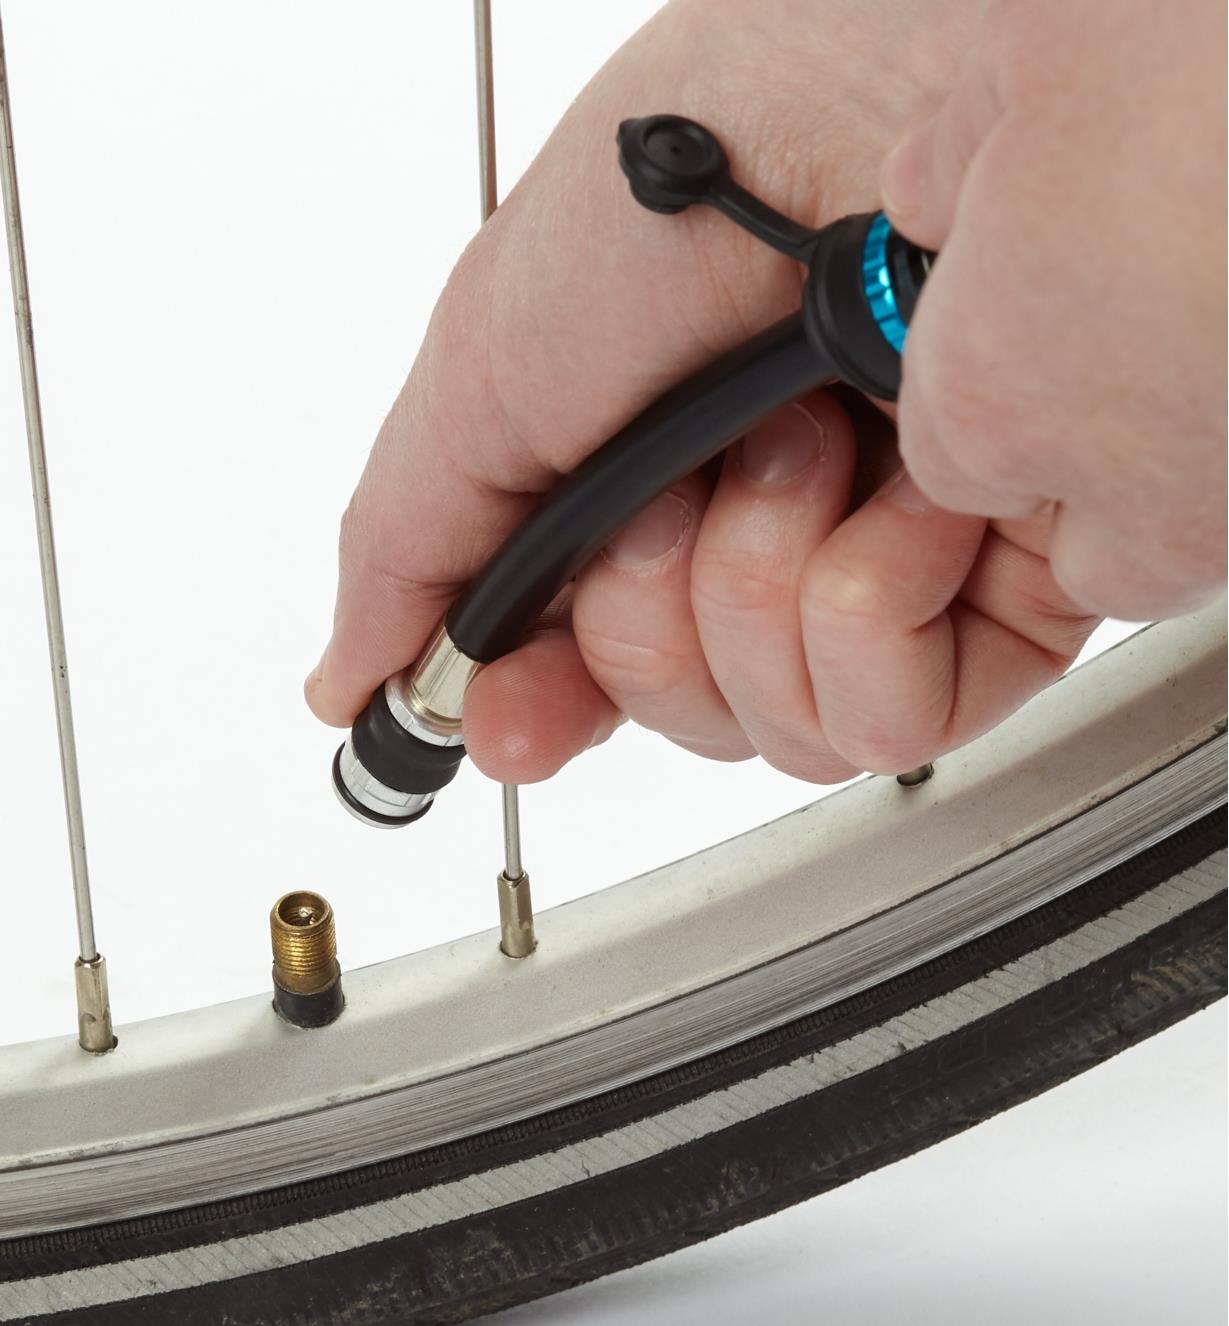 09A0214 - Minipompe pour vélo